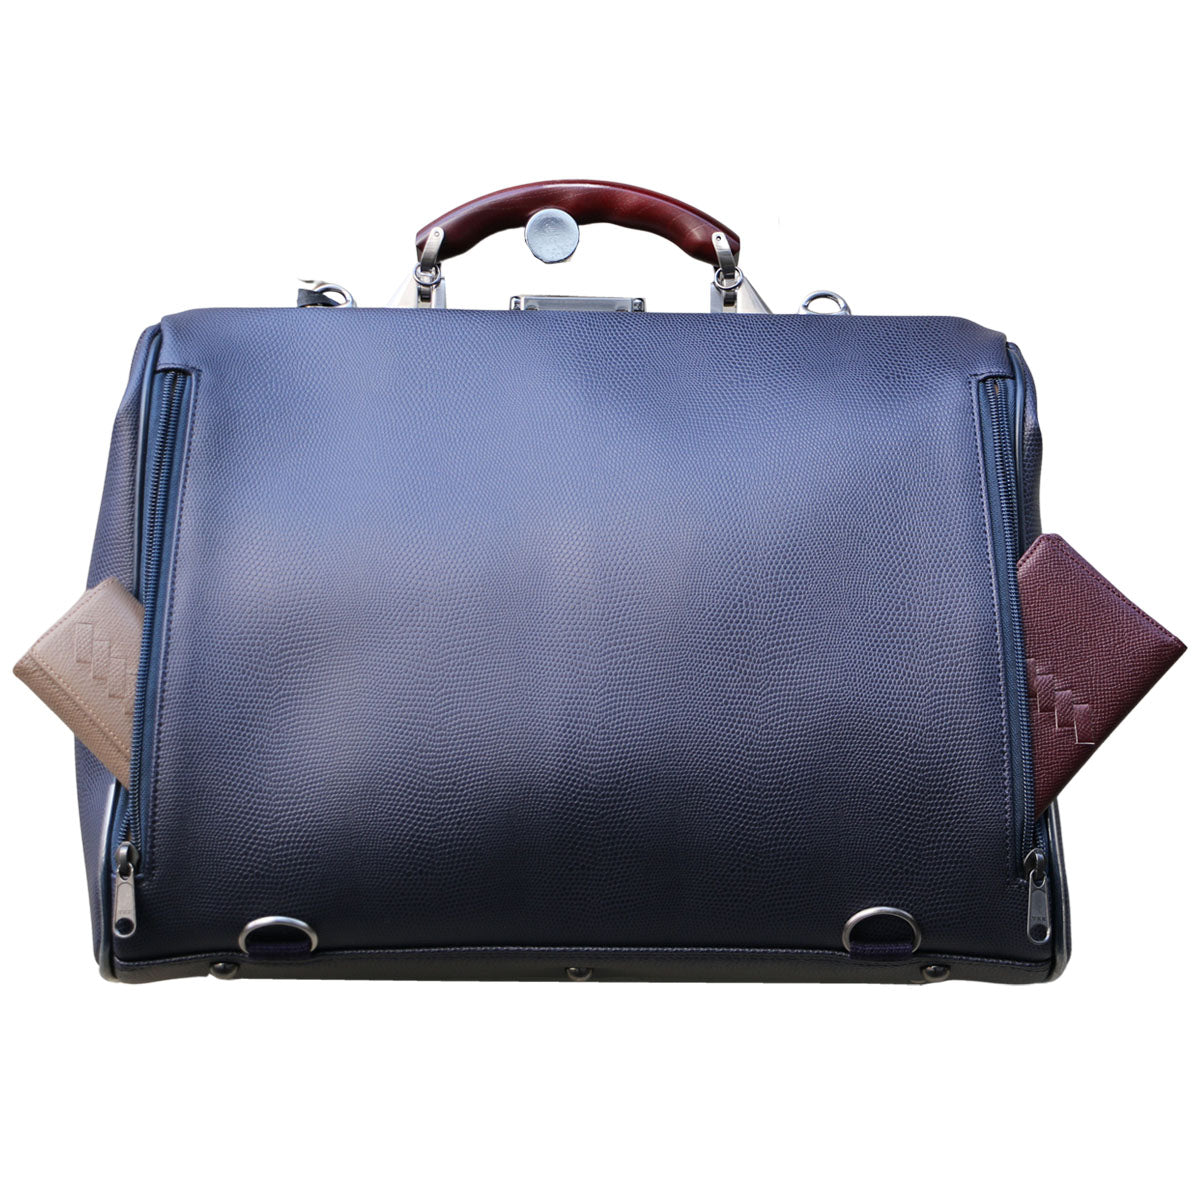 リザードM 豊岡鞄、ダレスバッグ、リュックのYOUTA(ヨウタ)公式通販